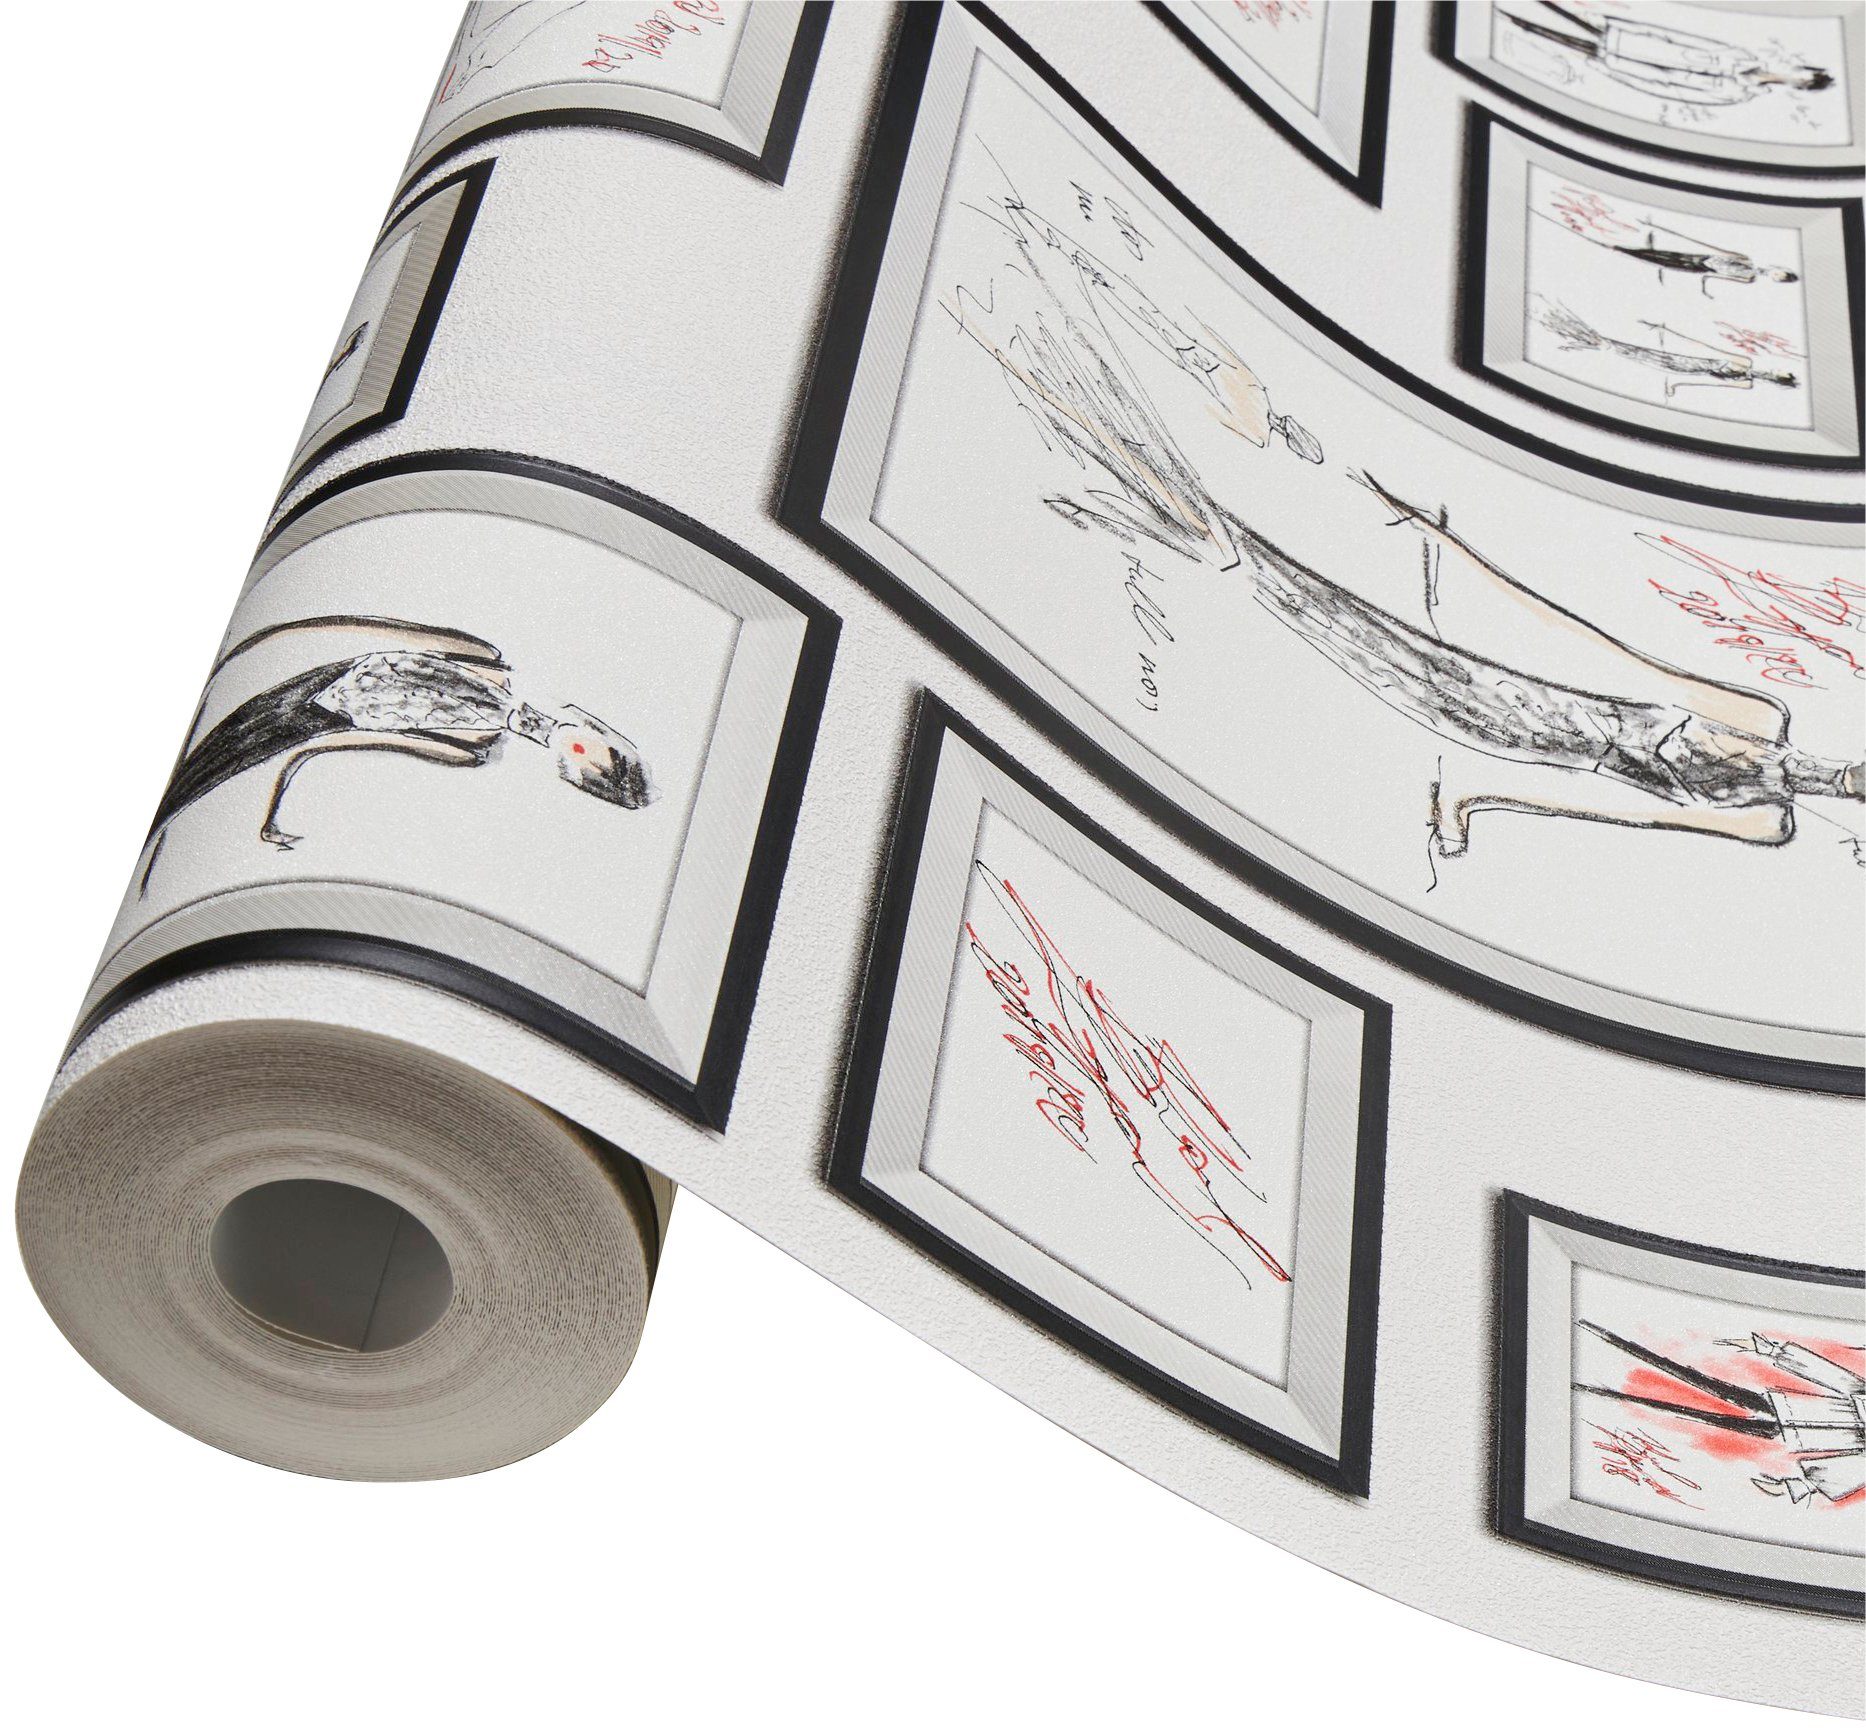 Architects Paper Sketch, Tapete Designer Vliestapete weiß/schwarz/rot Bilderrahmen Tapete